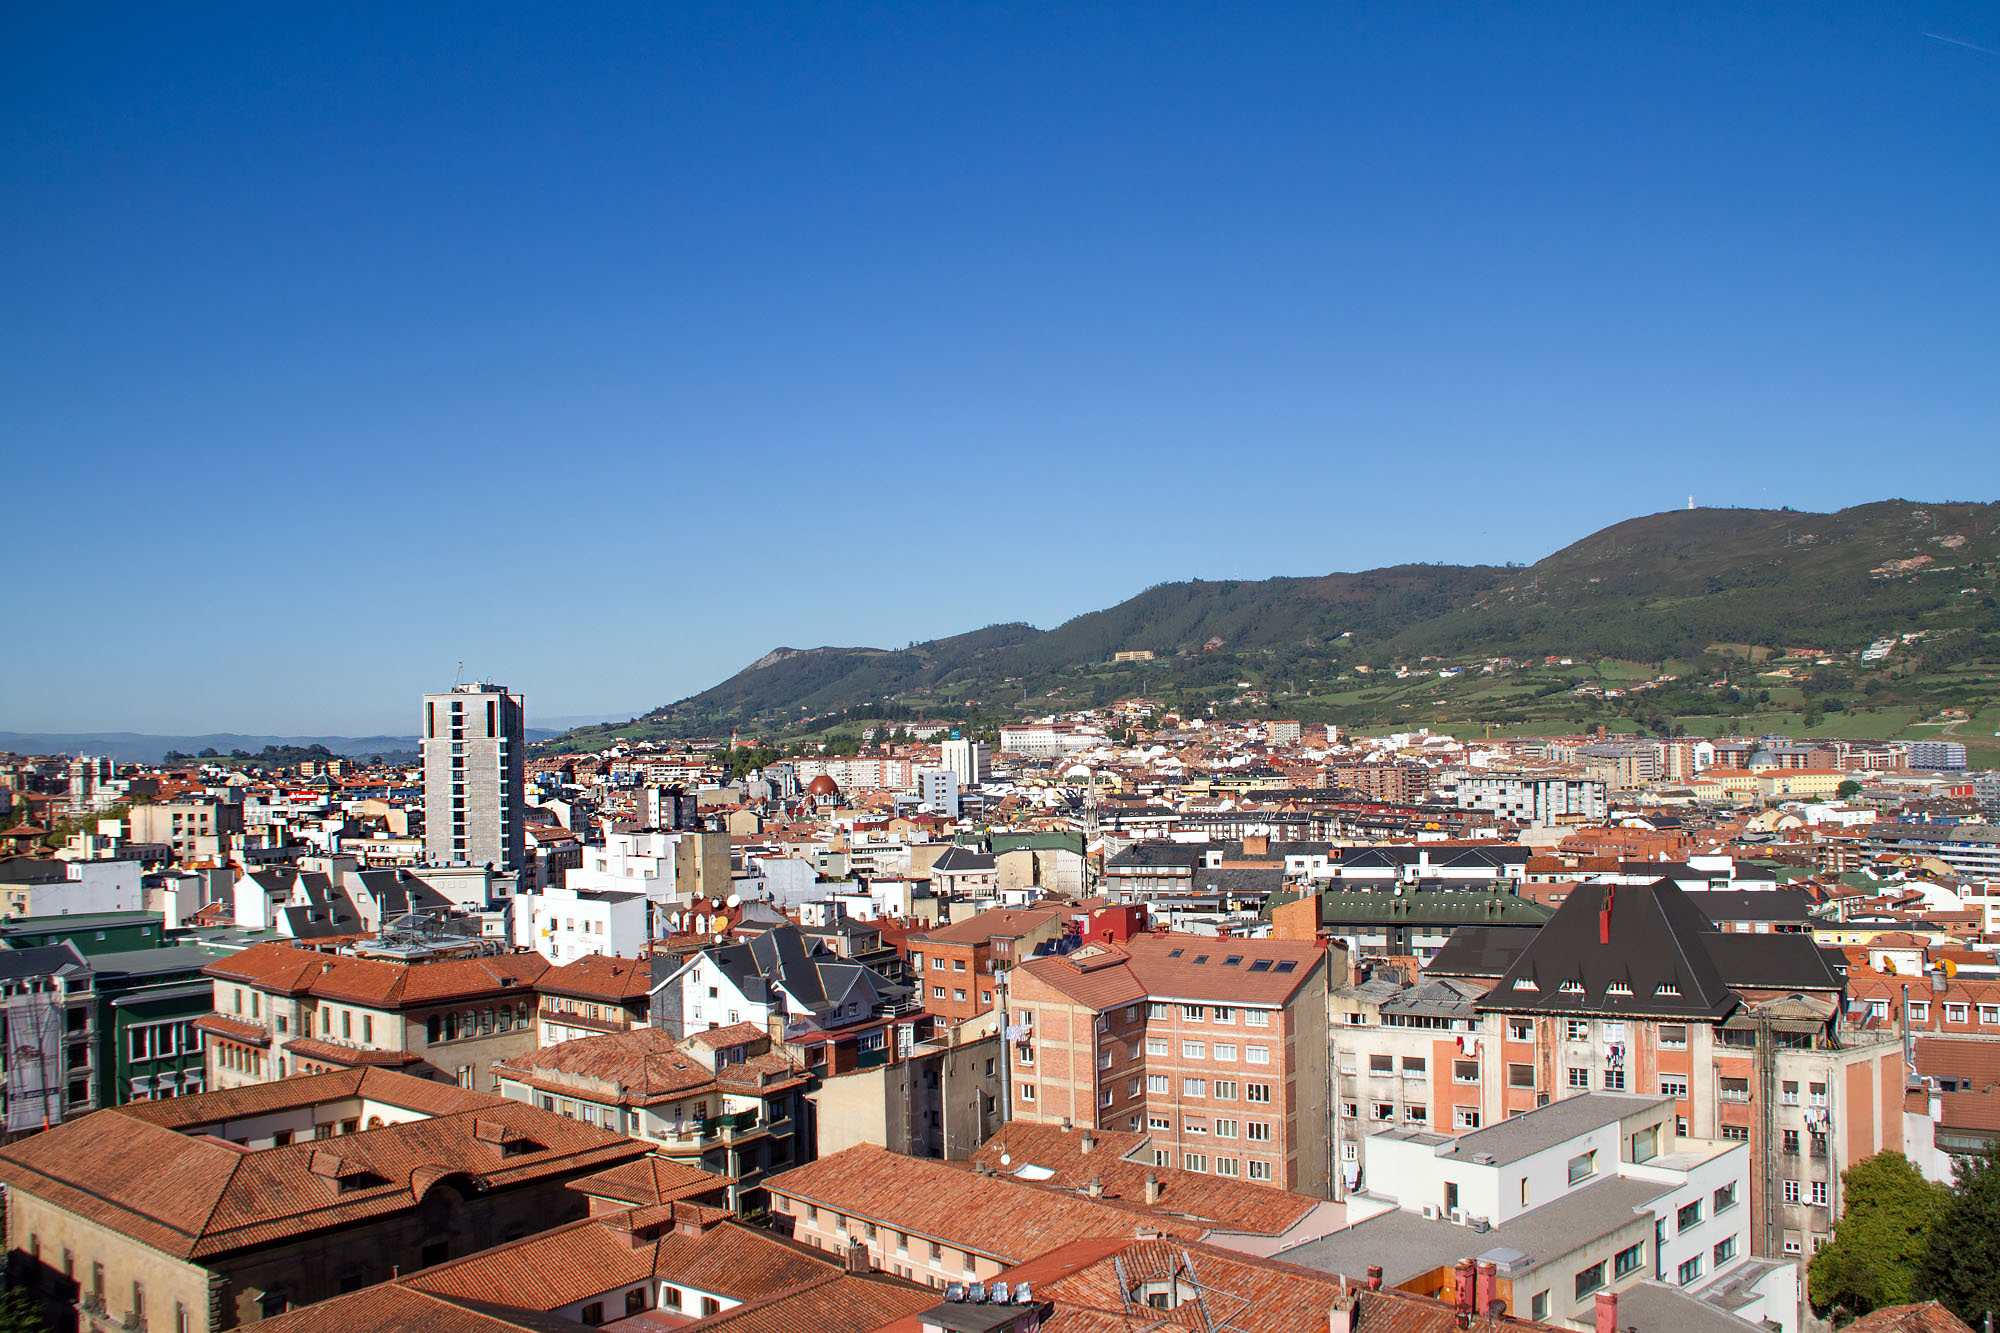 Panoramic views over Oviedo